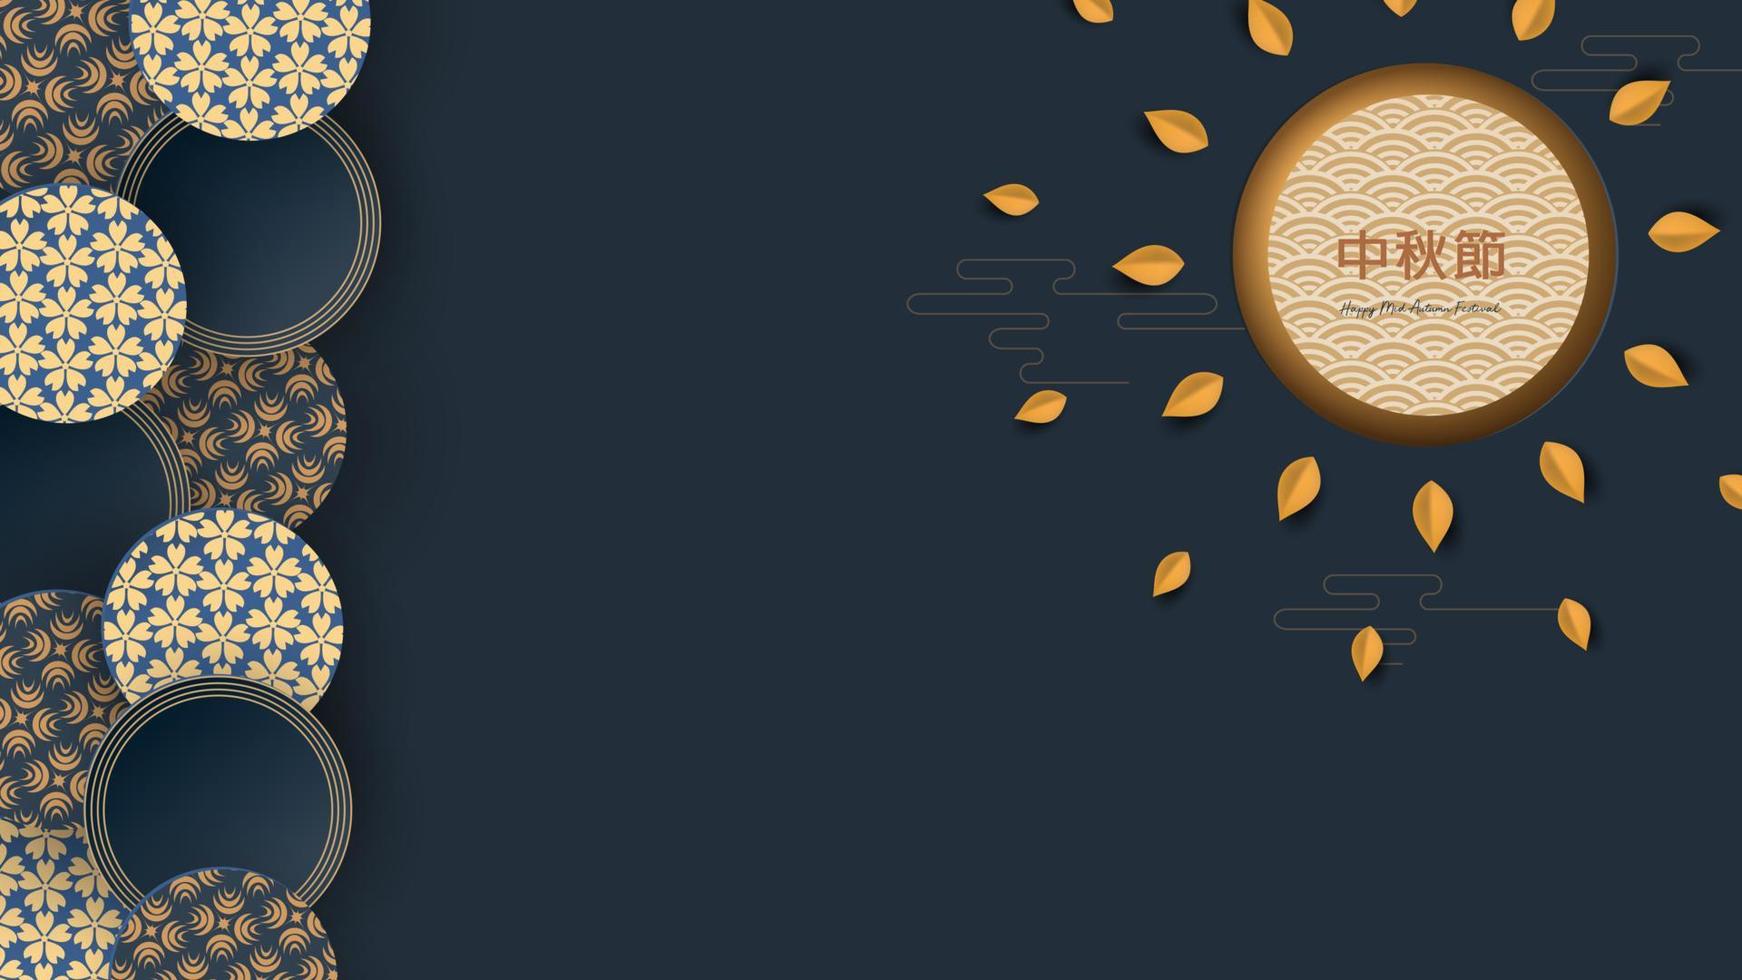 bannerontwerp met traditionele Chinese cirkelspatronen die de volle maan vertegenwoordigen, herfstbladeren Chinese tekst gelukkig midden in de herfst, goud op donkerblauw. vector